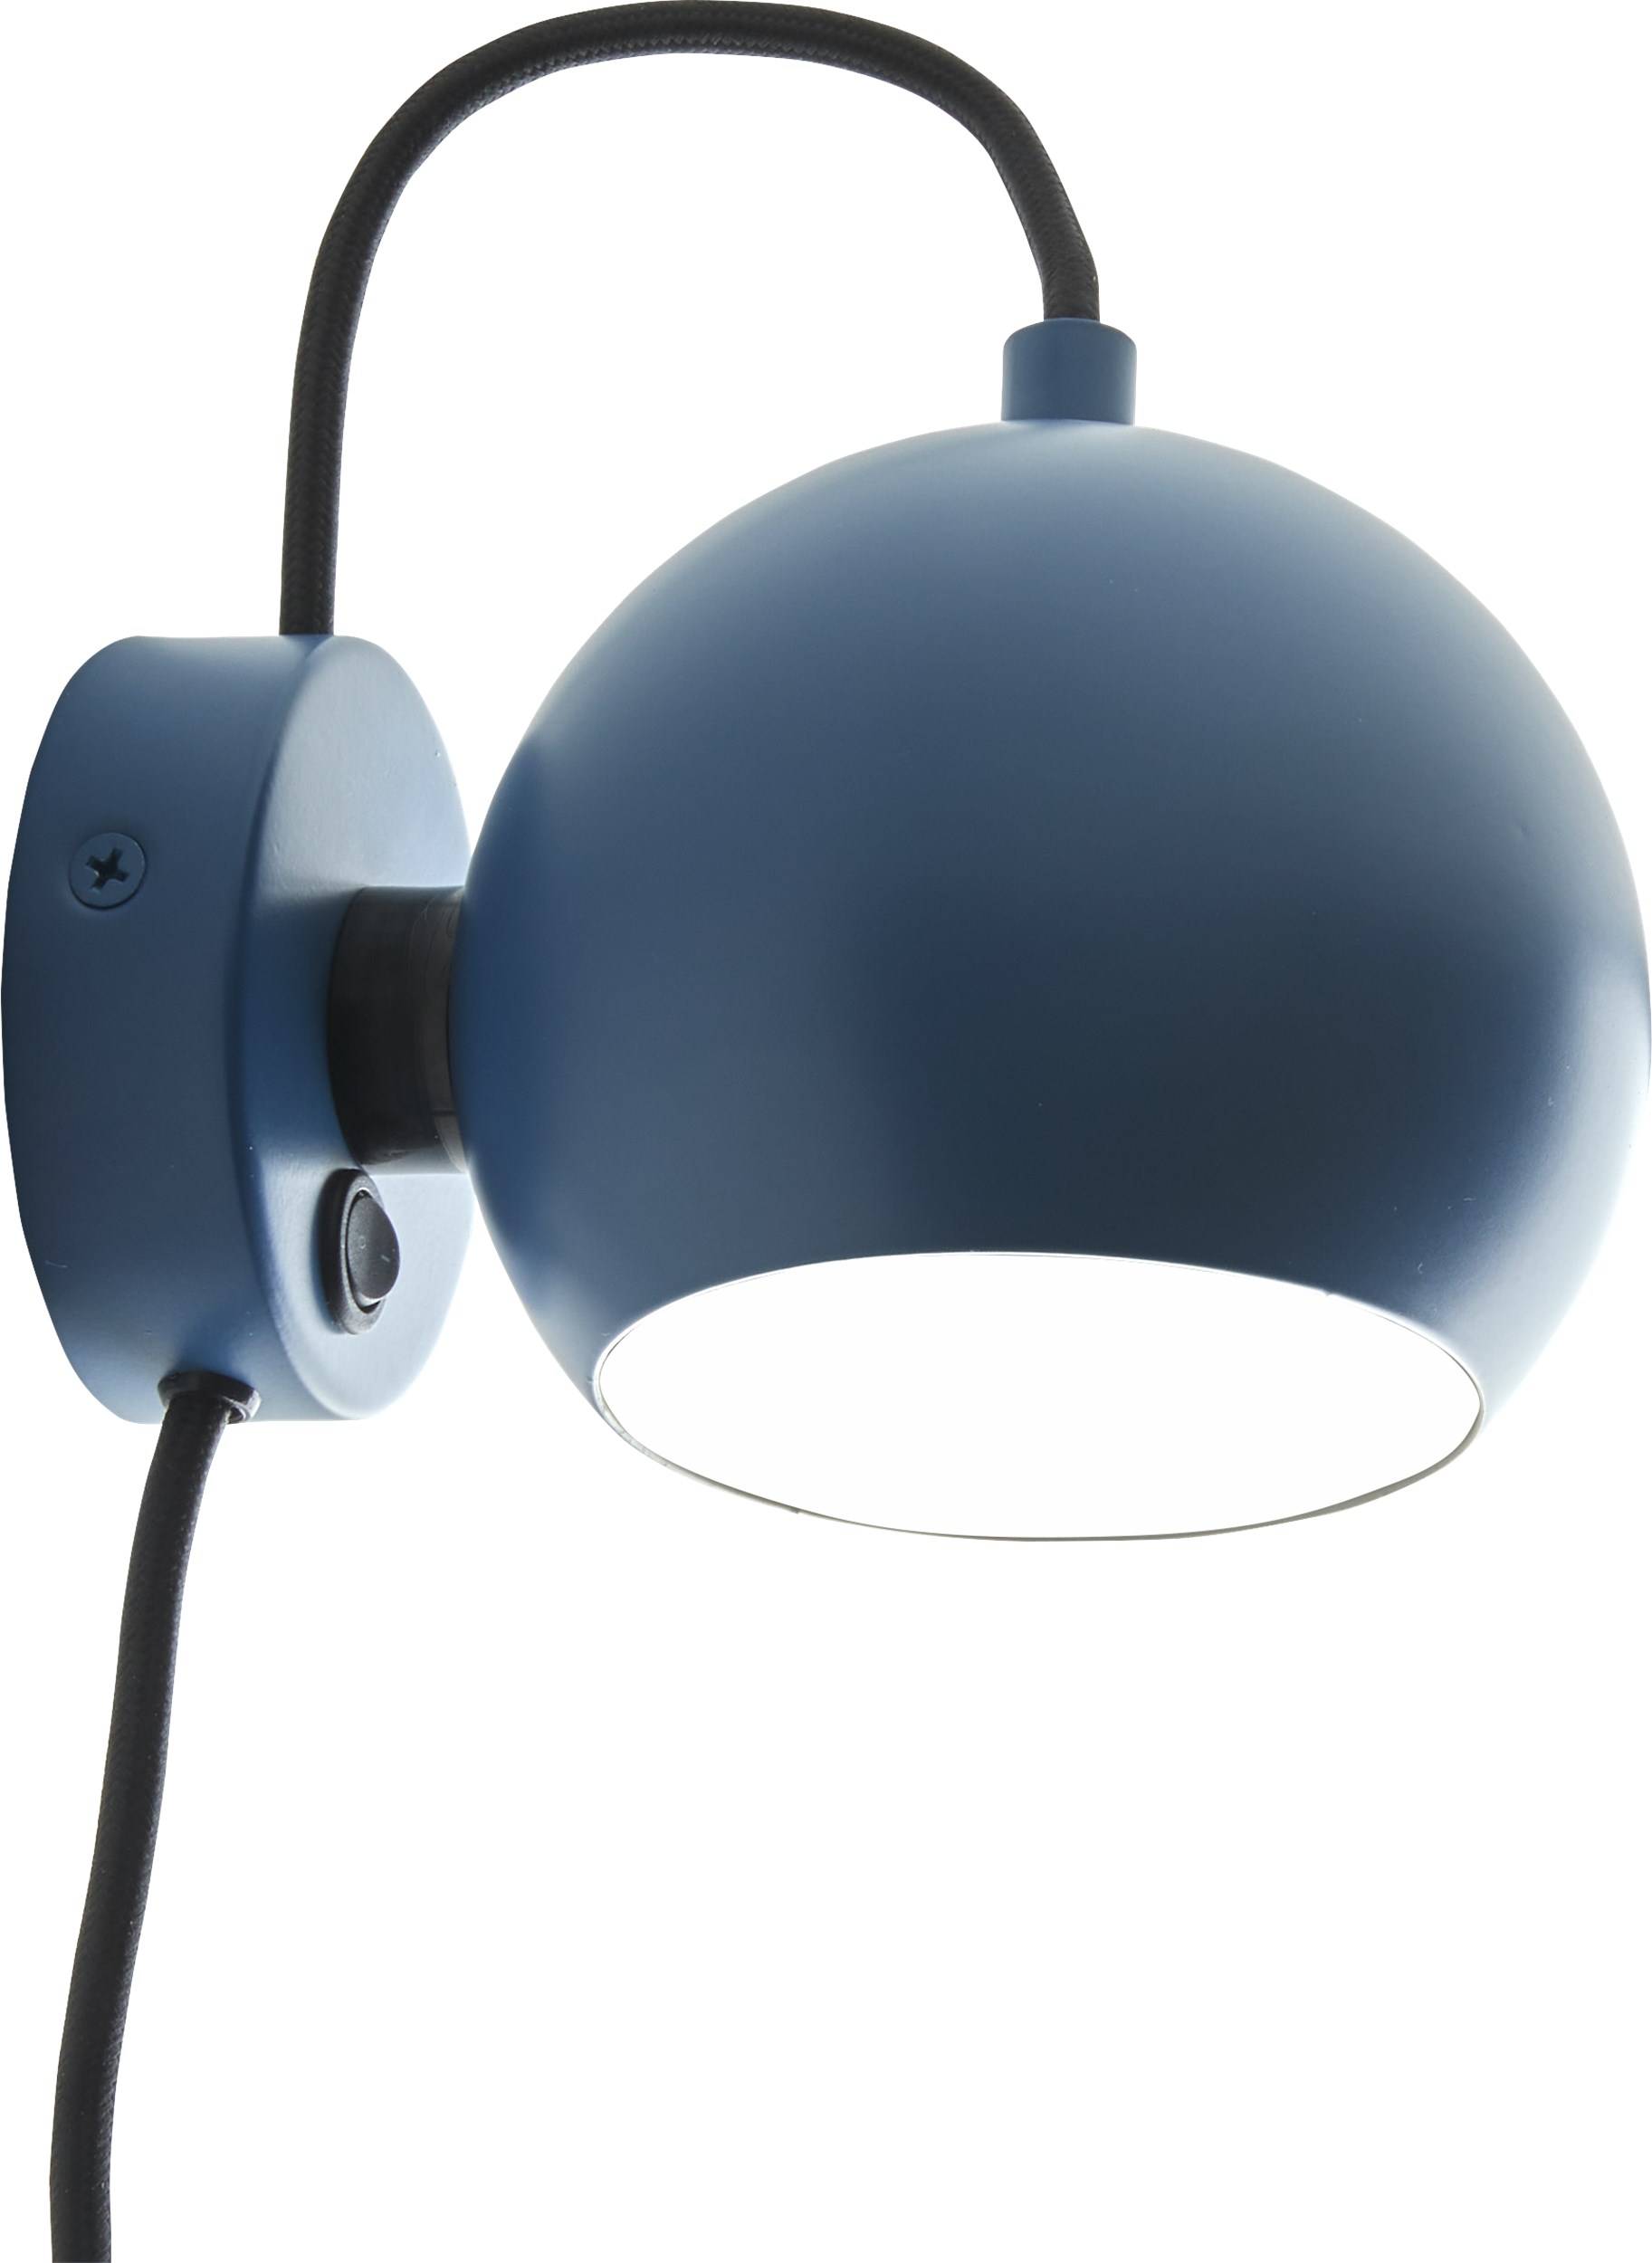 Ball Vägglampa 12 cm - Matt petrolblå metallskärm, svart/vit textilsladd och med strömbrytare på basen